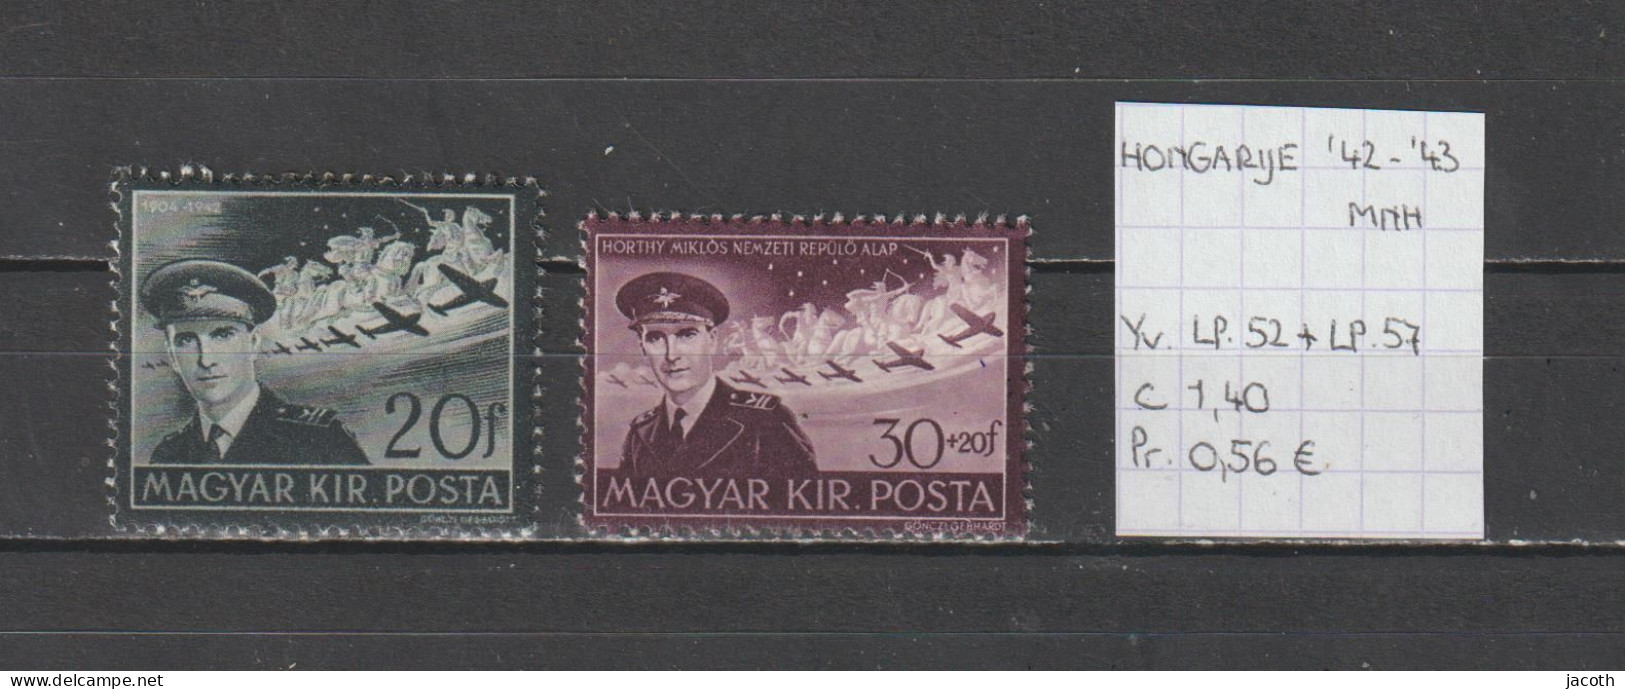 (TJ) Hongarije 1942-'43 - YT LP. 52 + 57 (postfris/neuf/MNH) - Unused Stamps